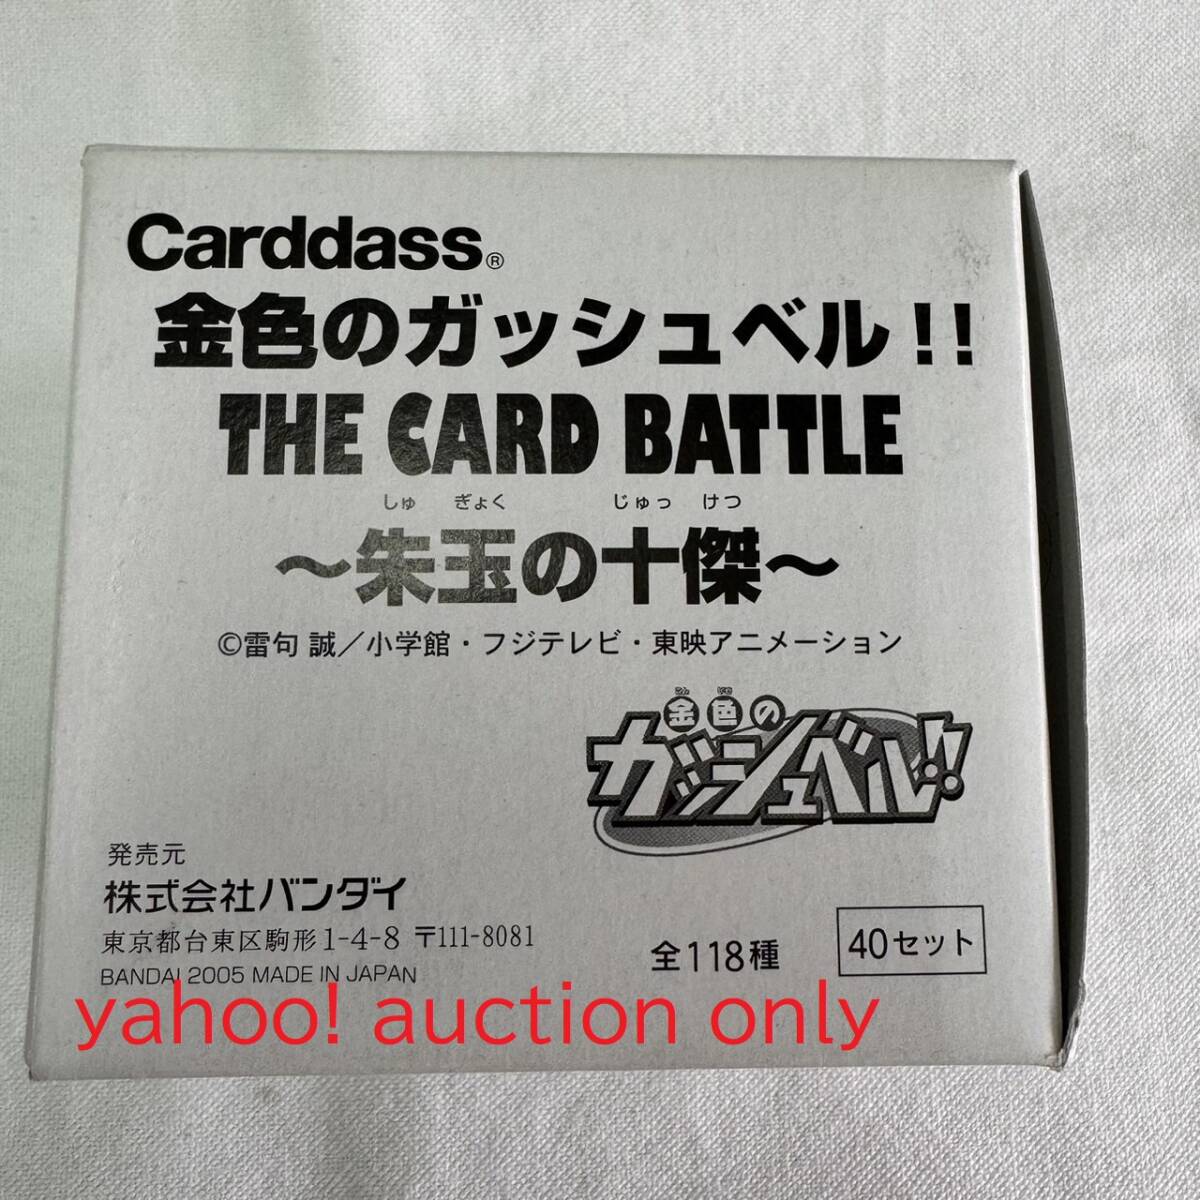 【送料無料】カードダス 金色のガッシュベル THE CARD BATTLE 朱玉の十傑 1箱 40セット / 当時物 廃盤 希少 レア 2005